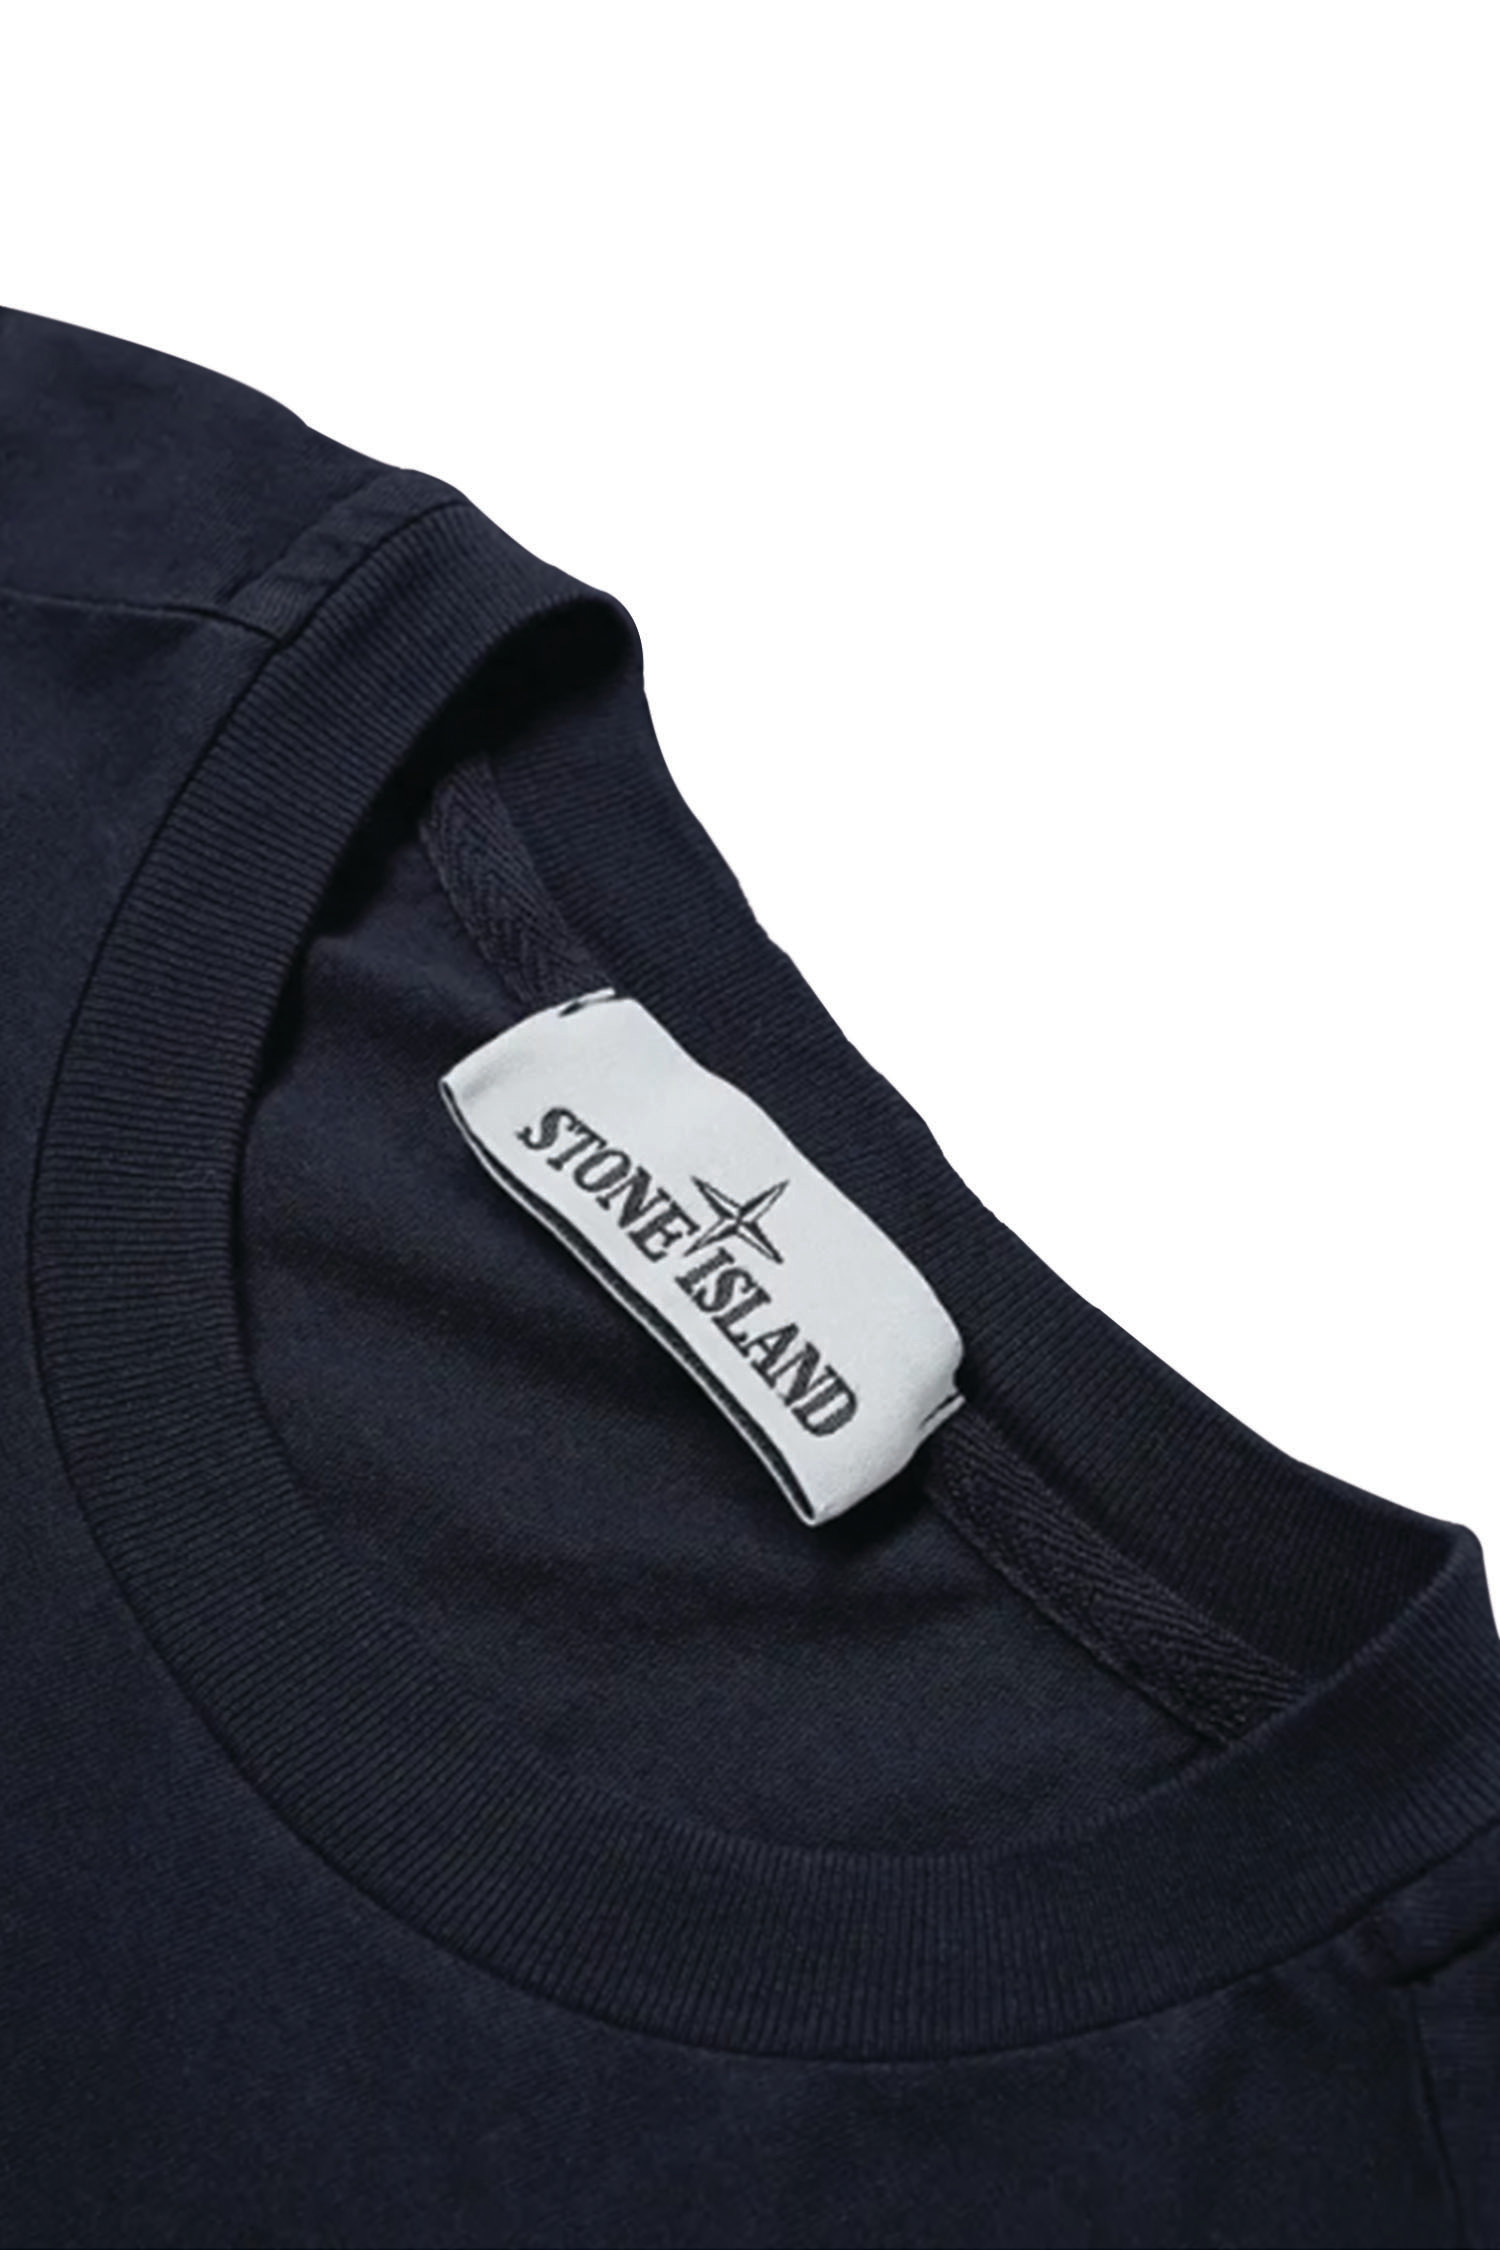 Stone Island Chest Logo Men's T-Shirt Black 78152NS89-V0029